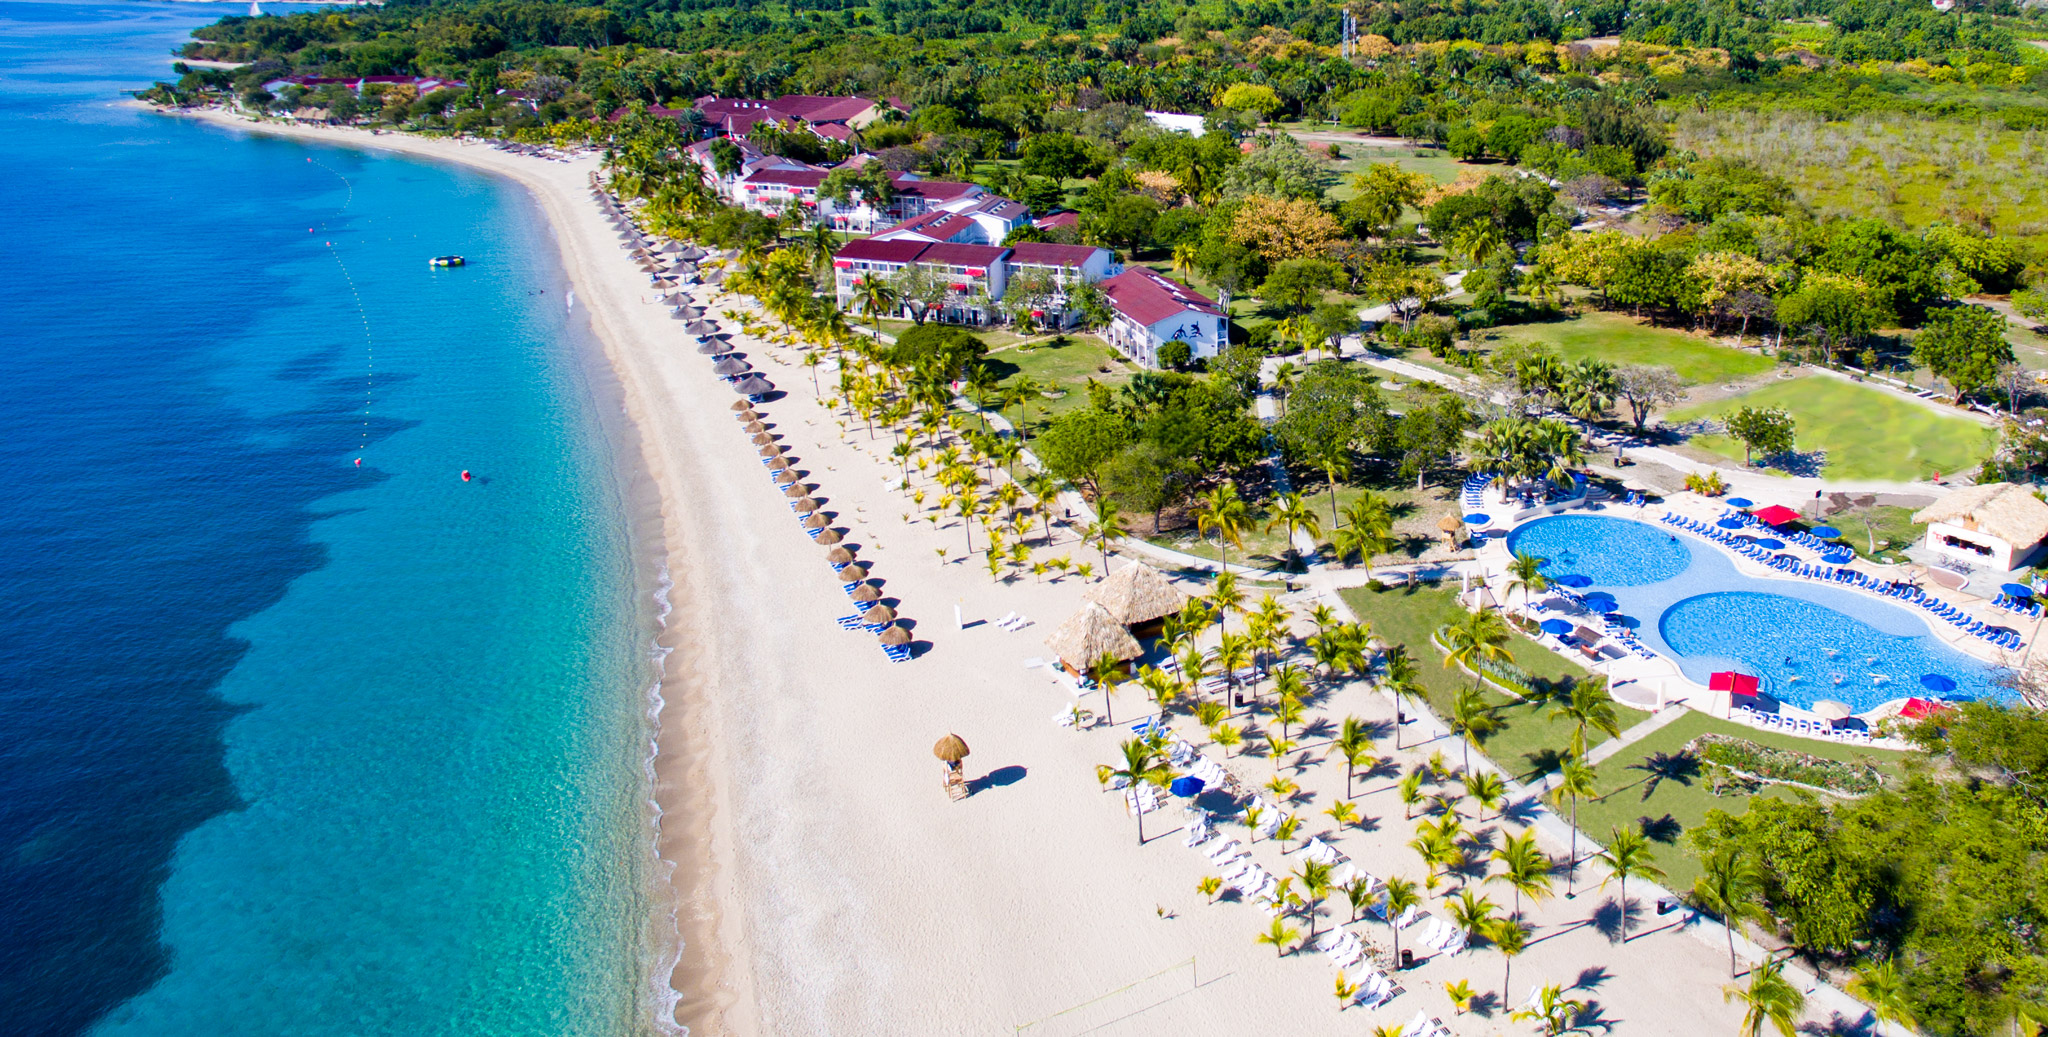 Le fantastiche spiagge caraibiche da scoprire con l'assicurazione viaggio Haiti di Amerigo.it